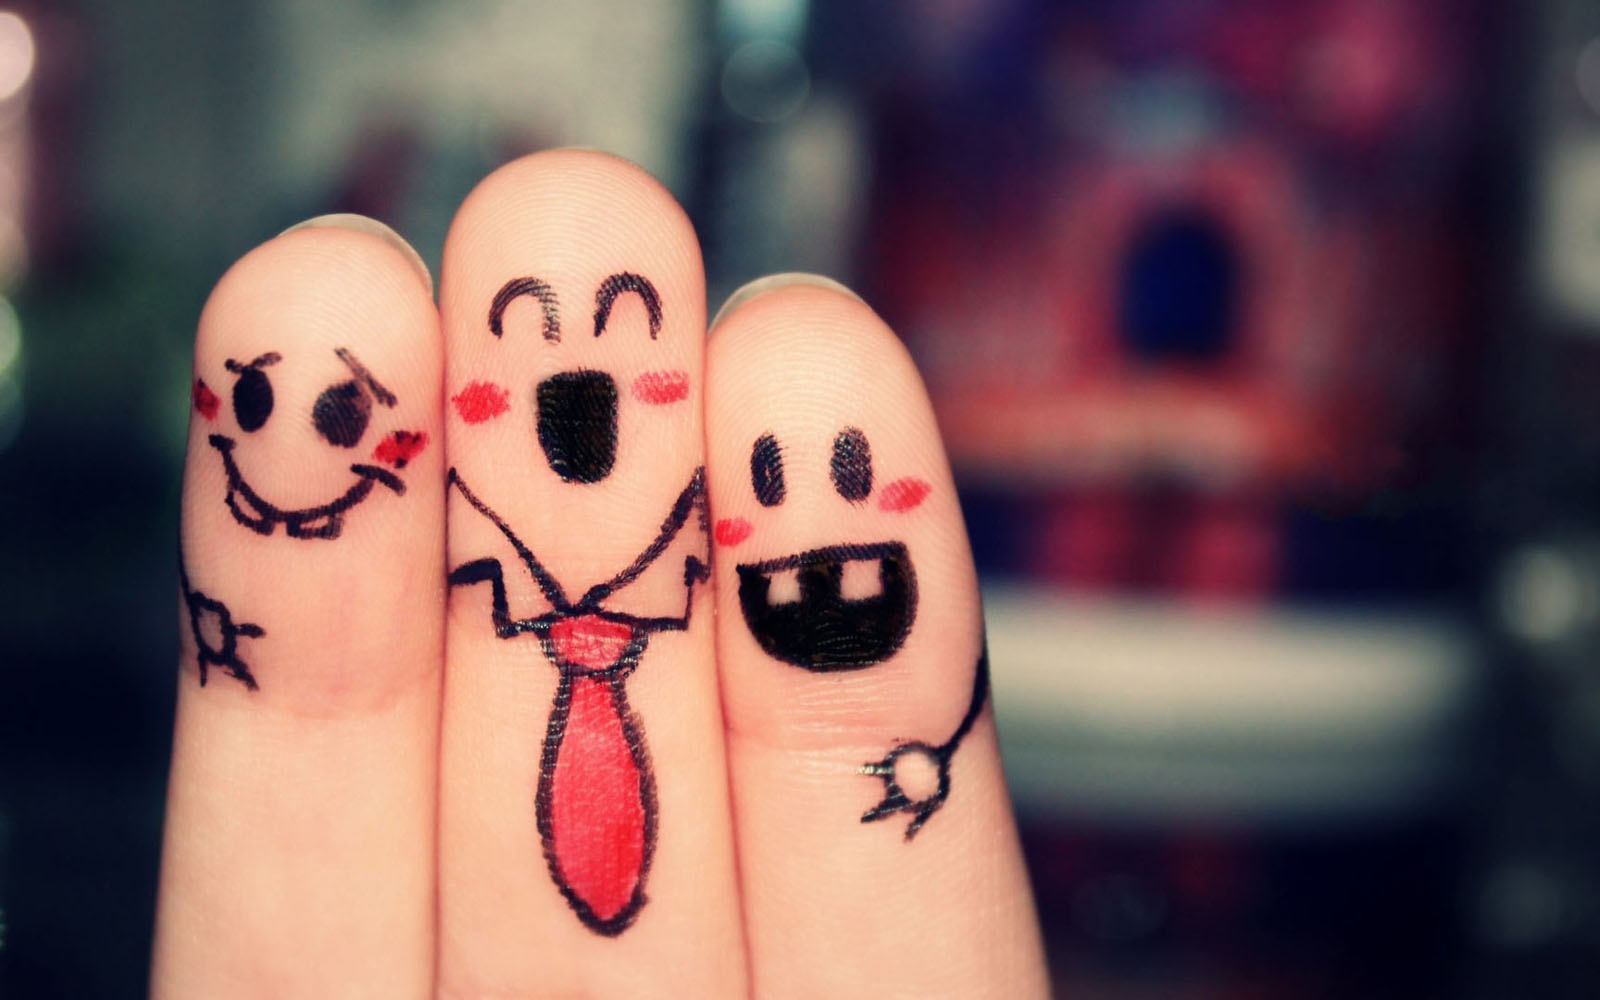 finger wallpaper,finger,nail,friendship,hand,smile